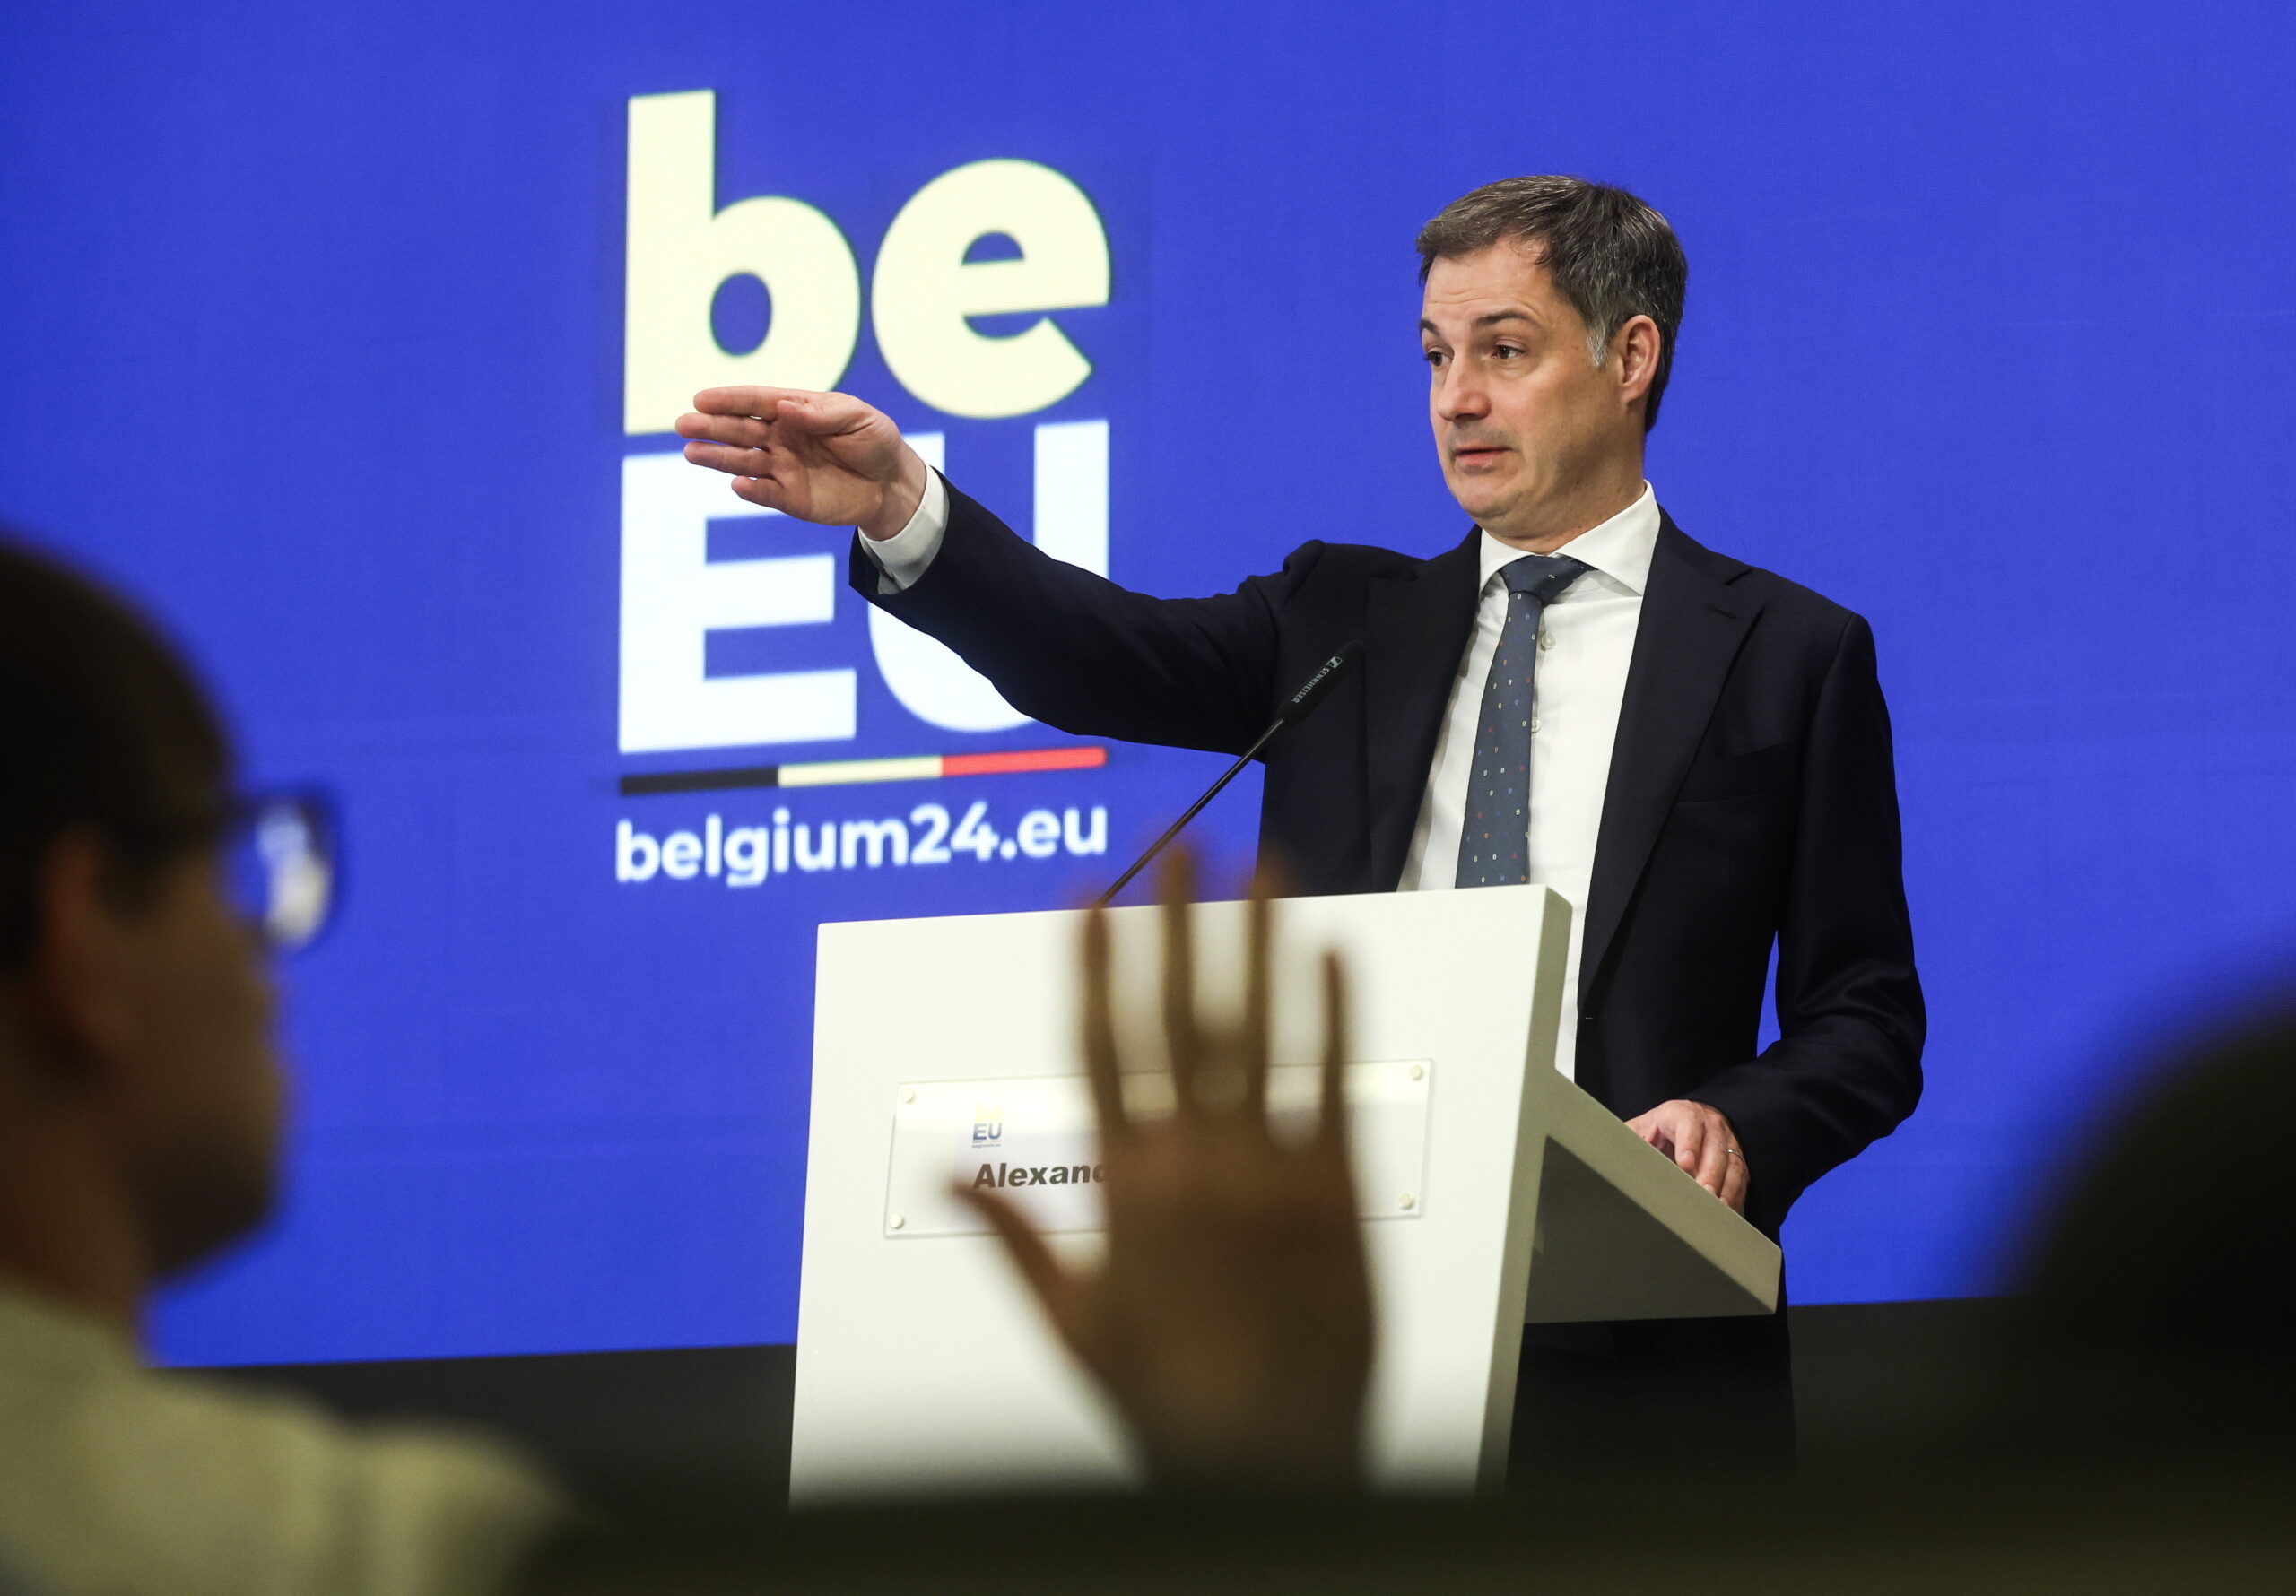 Kemény üzenet Orbán Viktornak: A soros elnökség nem azt jelenti, hogy te vagy Európa főnöke!